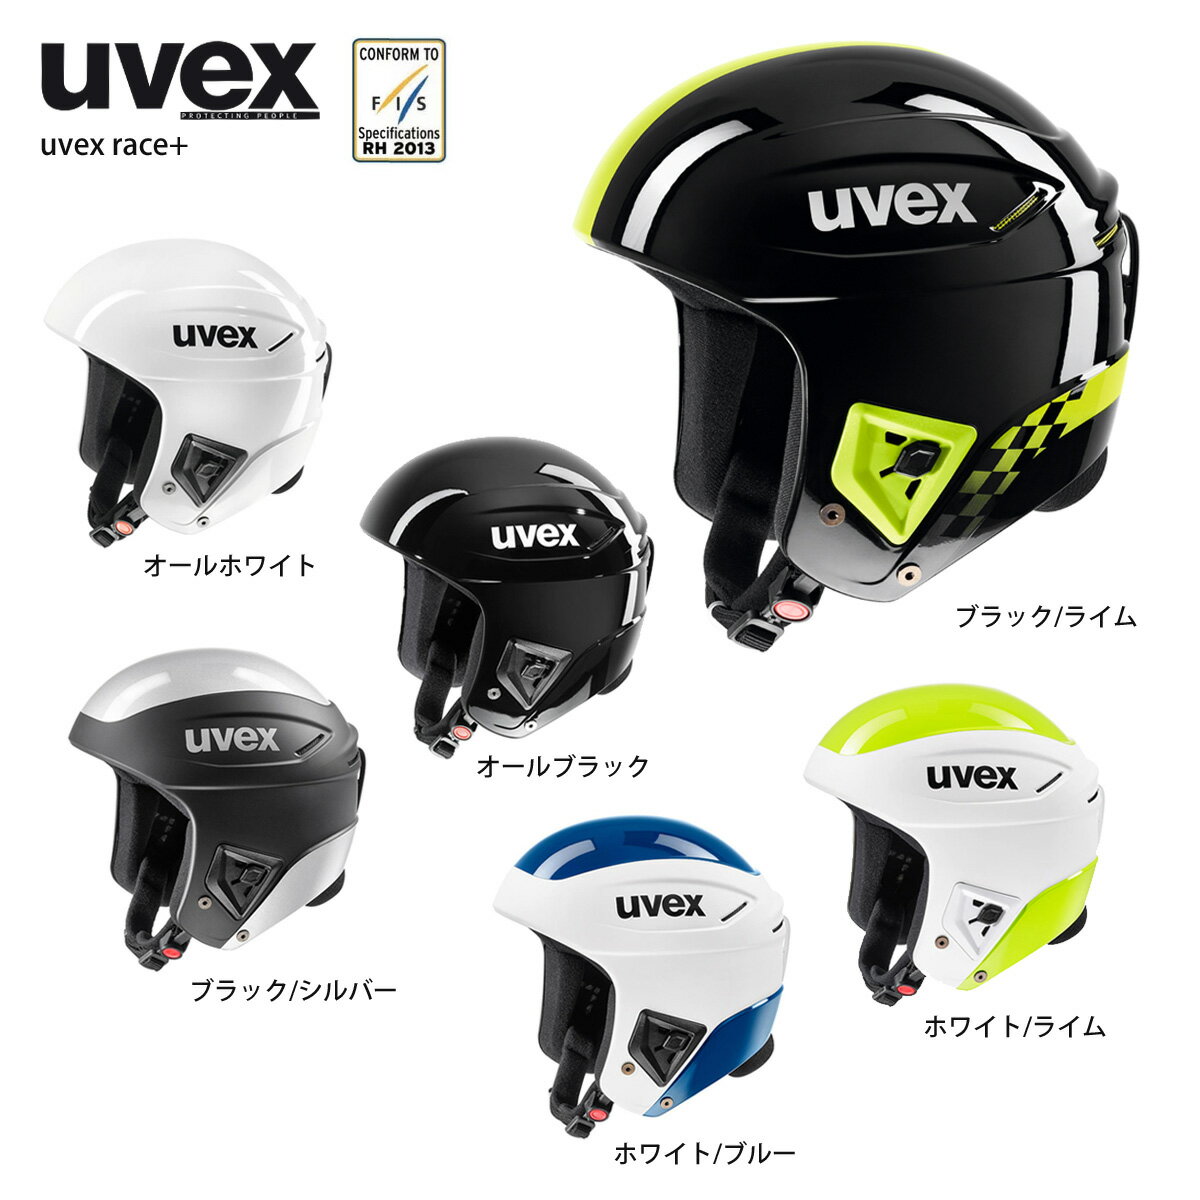 P10倍!3日まで スキー ヘルメット メンズ レディース UVEX ウベックス 2022 race+ レースプラス FIS対応 スノーボード